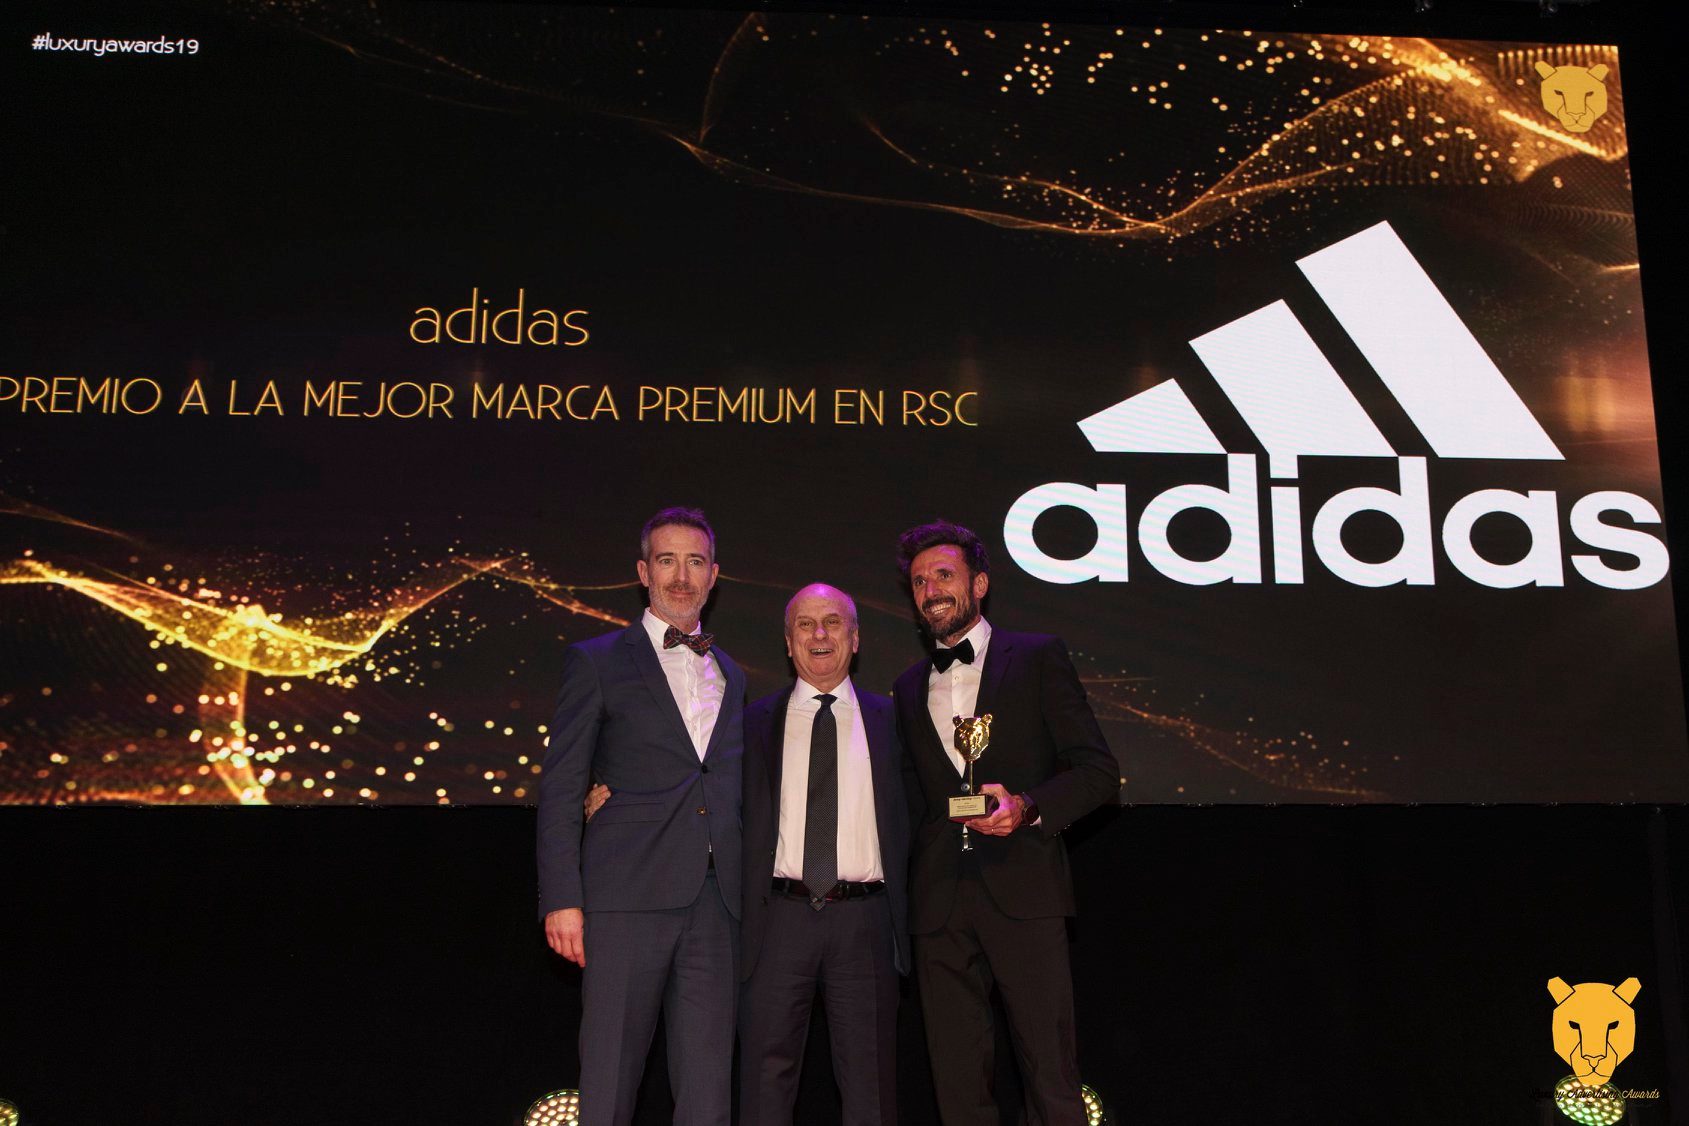 Chema Martínez, Atleta de la Marca adidas el Premio a la Mejor Marca Premium en RSC – Advertising Awards